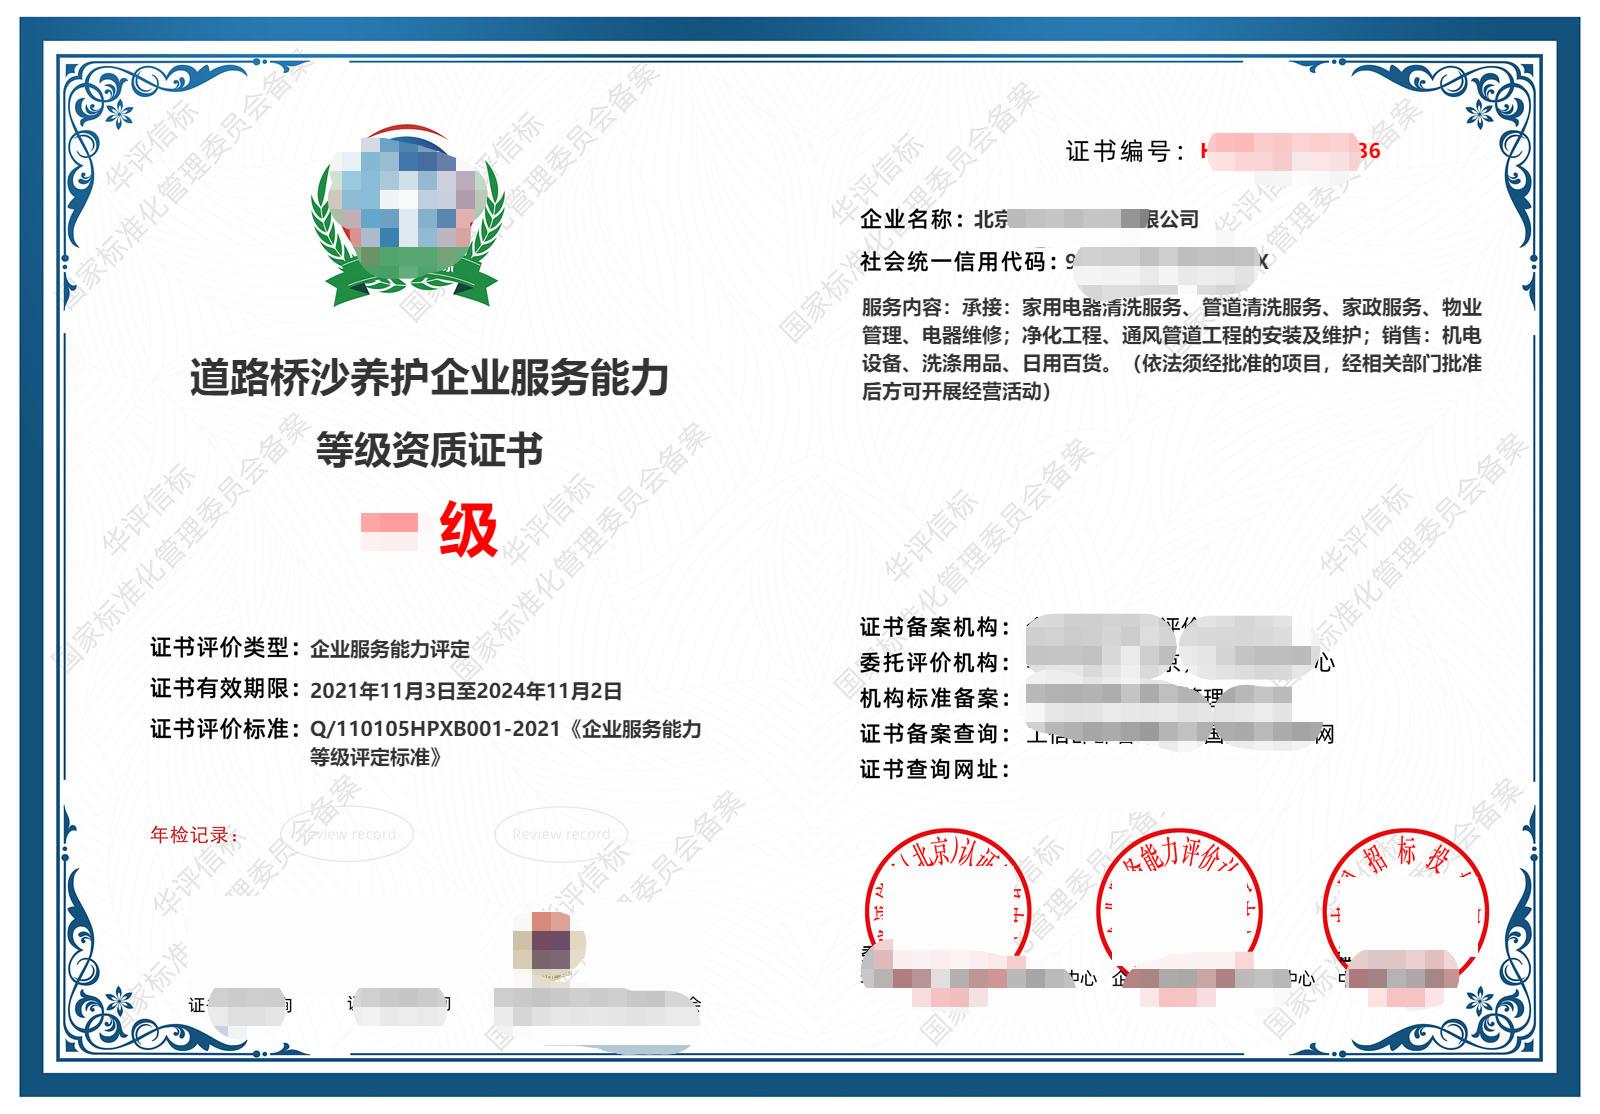 重庆道路桥沙养护企业服务能力等级资质证书